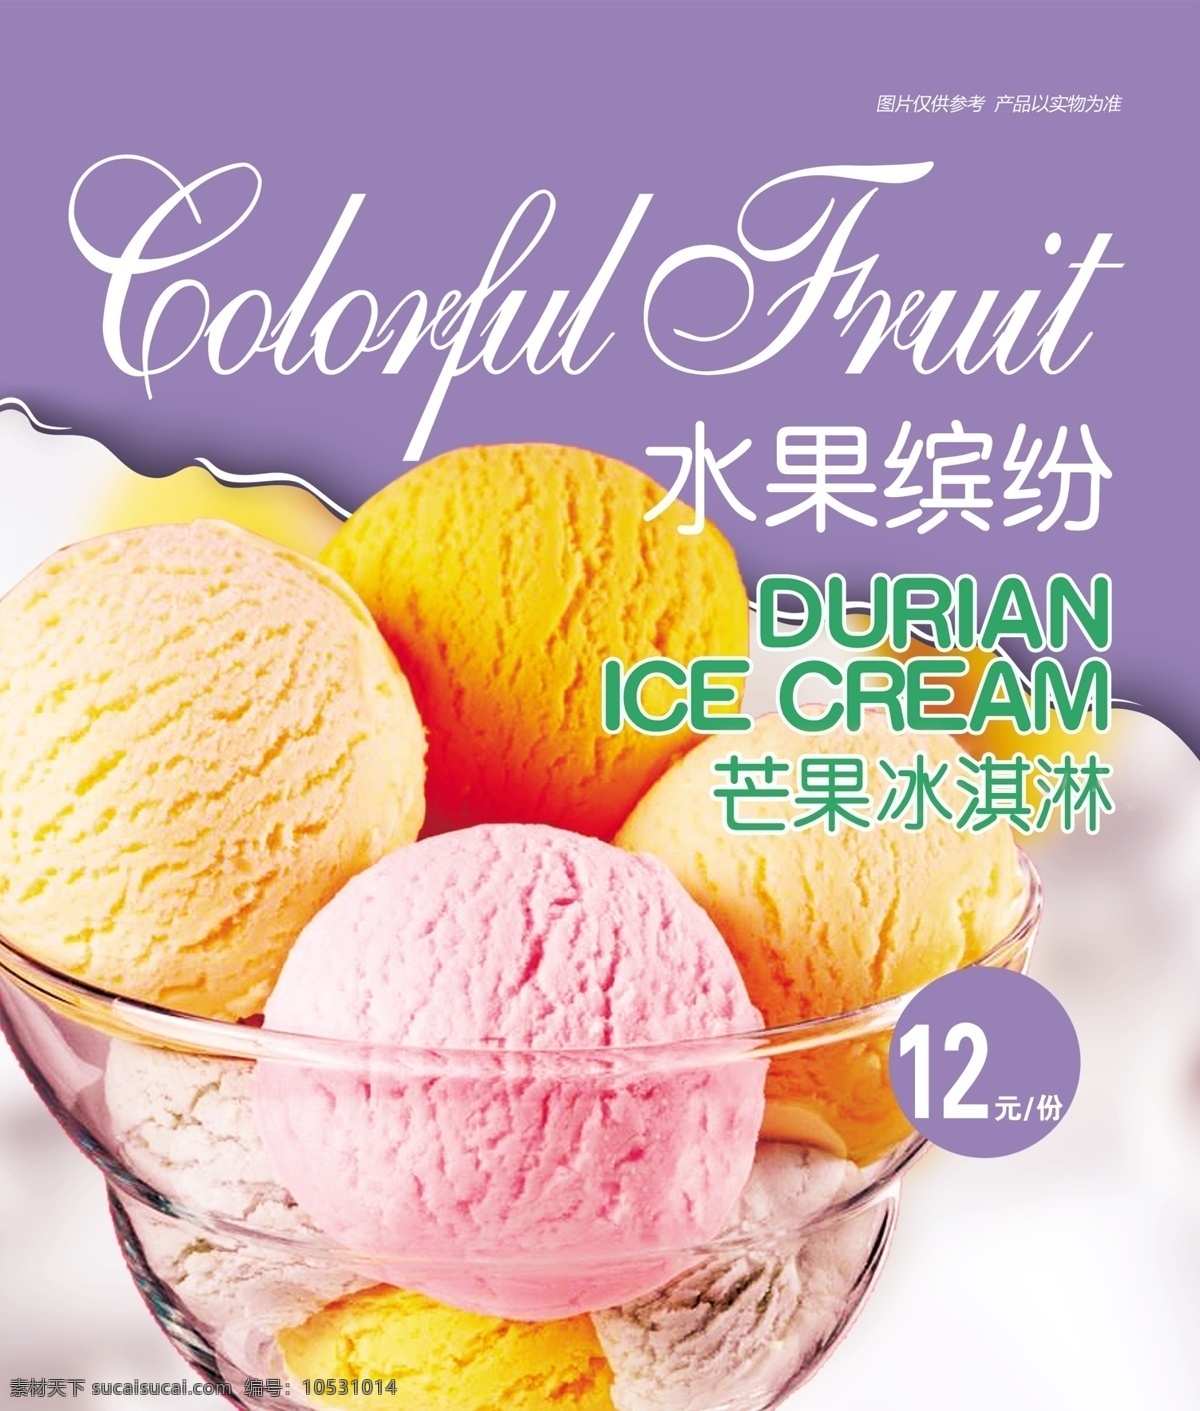 冰淇淋球 水果缤纷 价格表 夏季 清爽 灯箱片